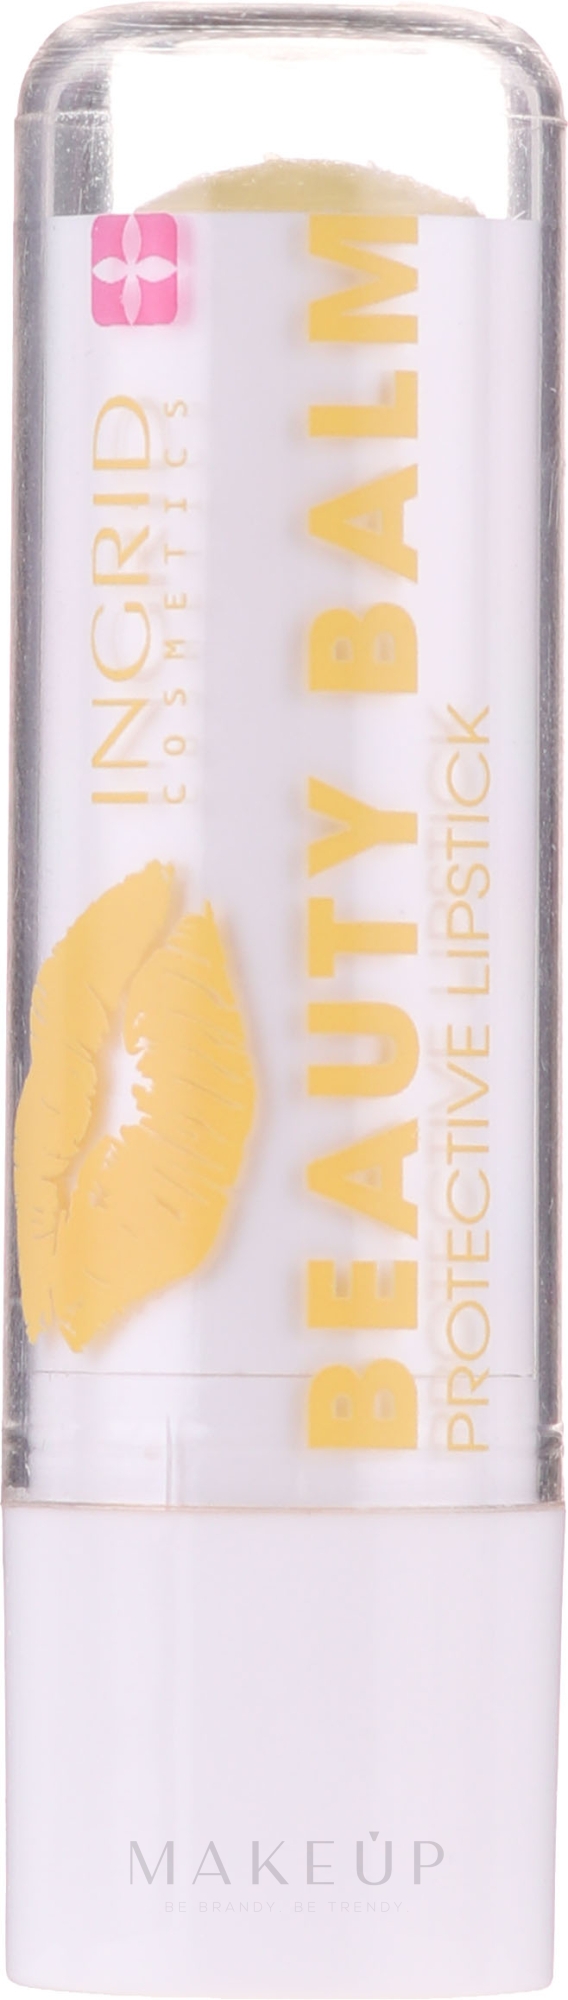 Schützender Lippenbalsam mit Duft von exotischen Früchten - Ingrid Cosmetics Beauty Balm Protective Lipstick  — Foto Süßer Honig